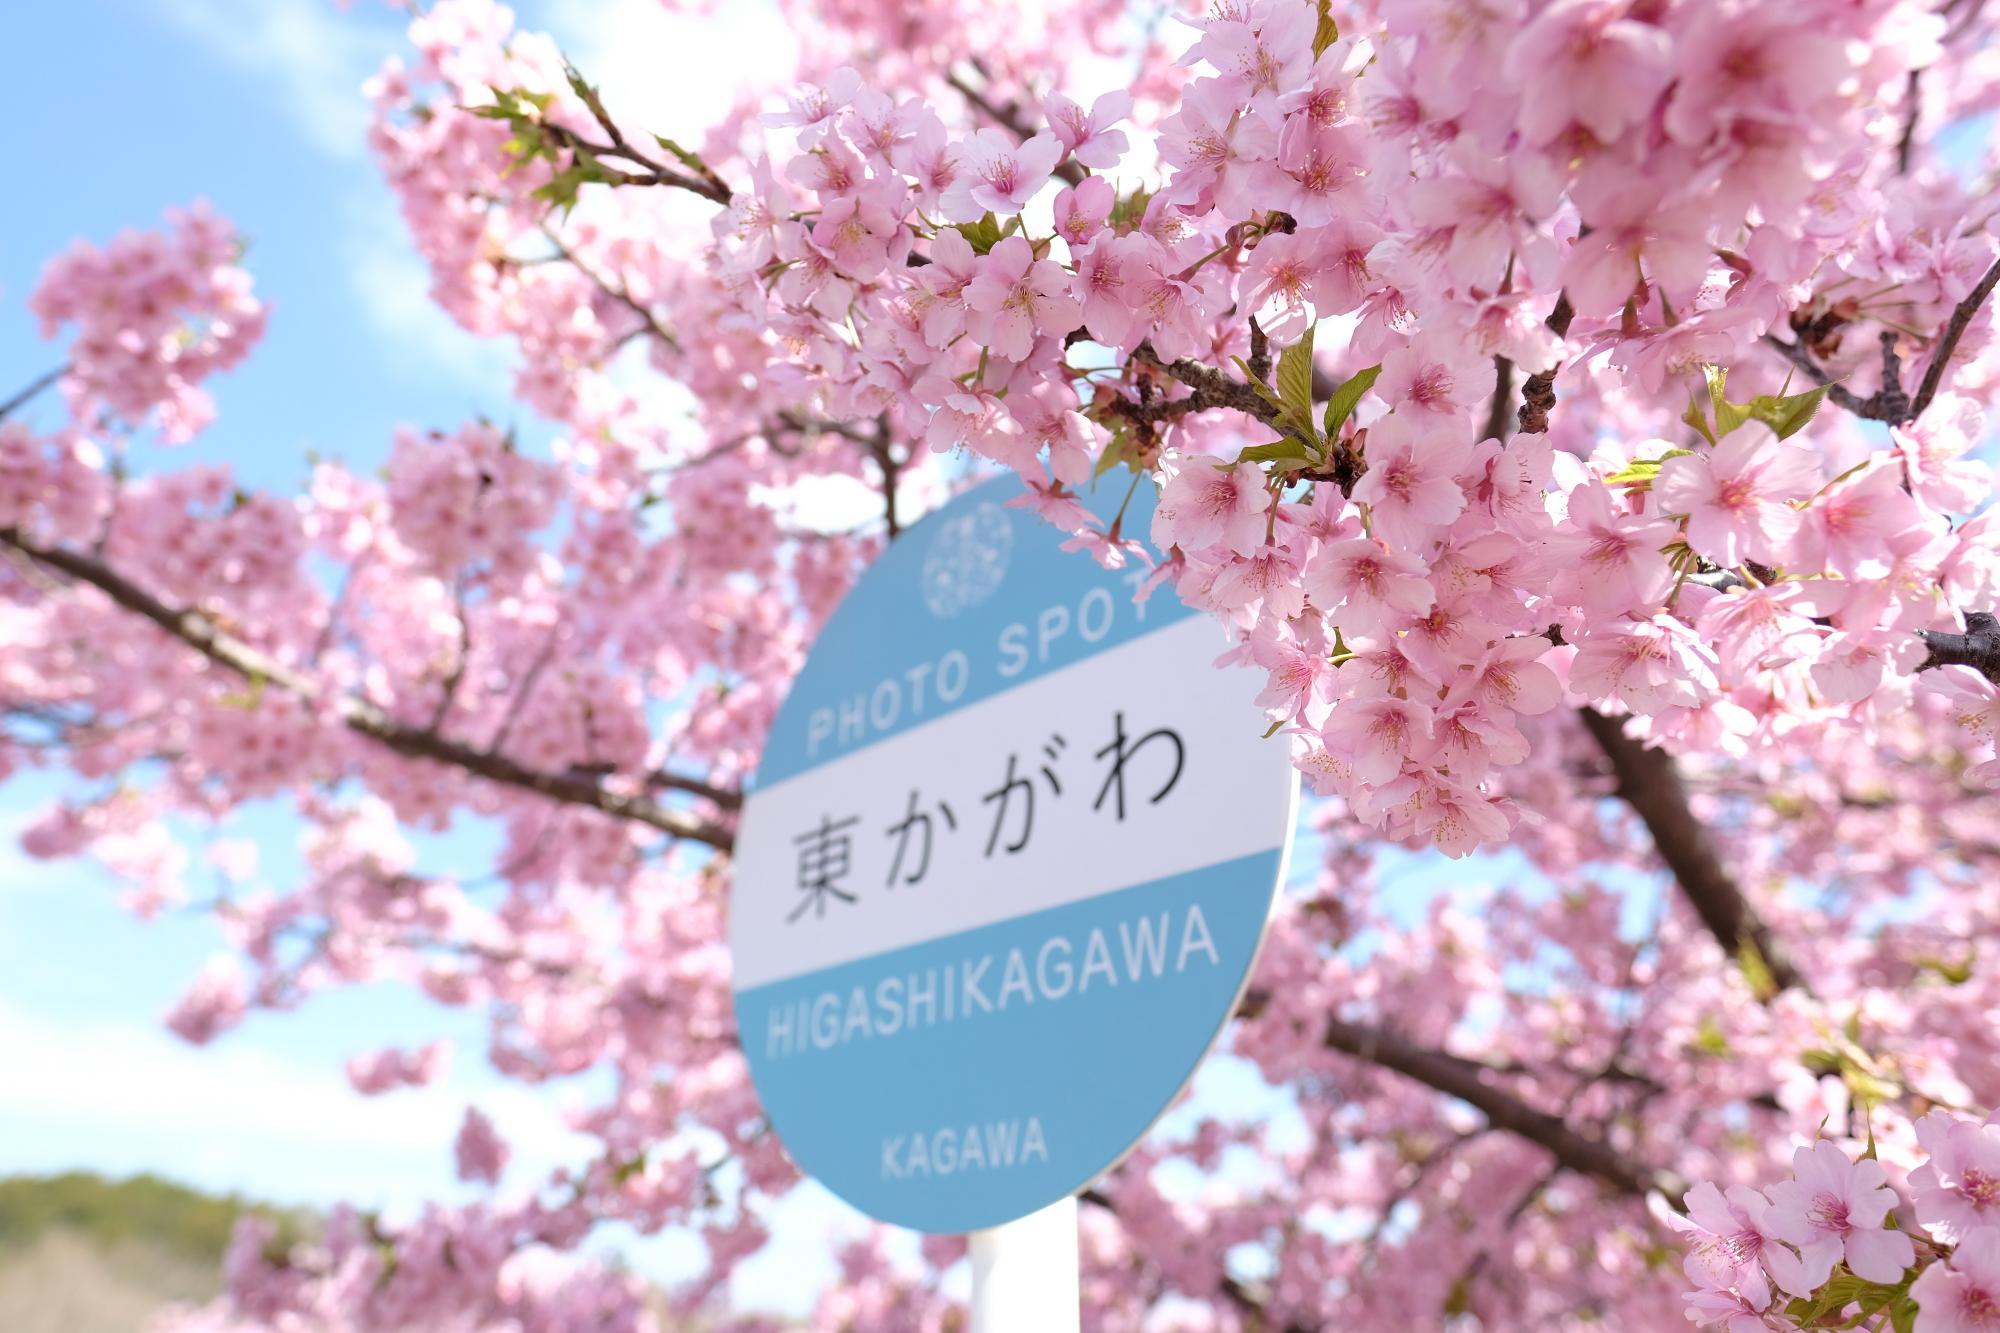 満開の河津桜とブルーのバス停型看板